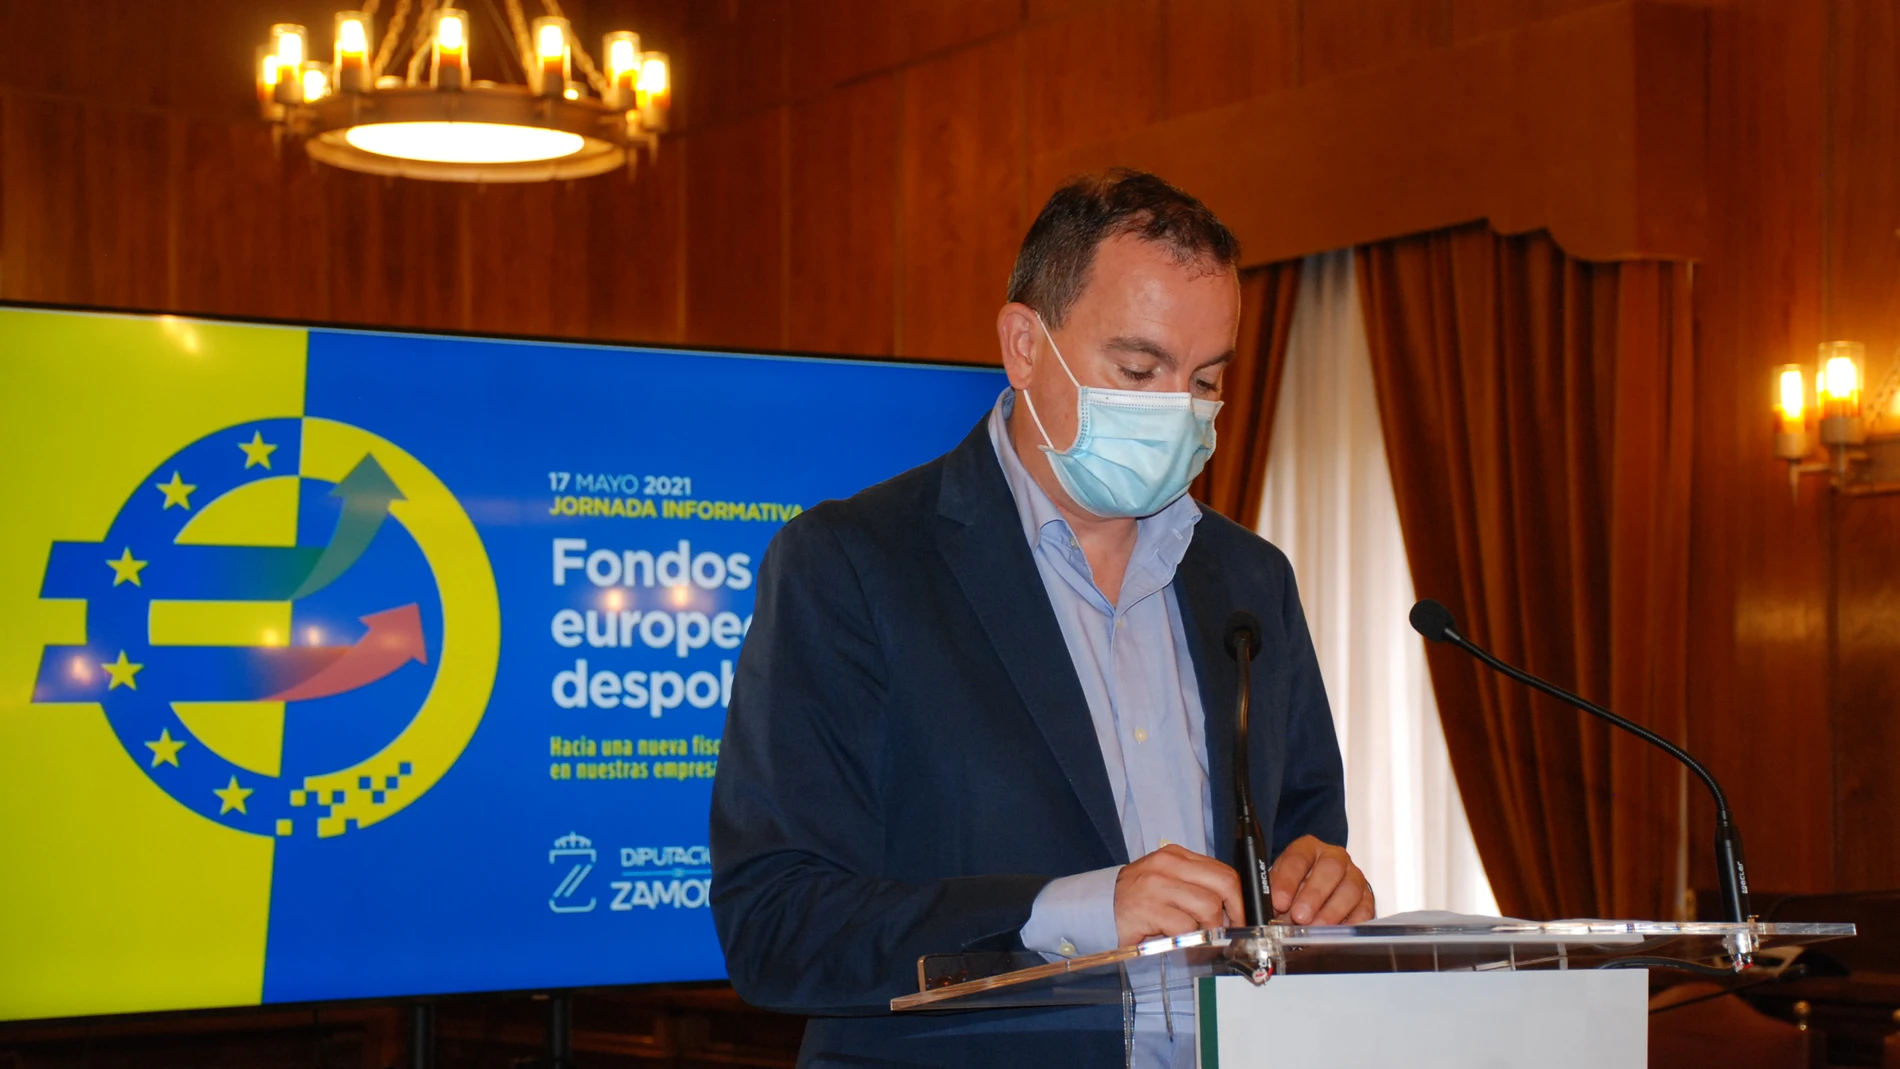 El presidente de la Diputación de Zamora, Francisco José Requejo, presenta la jornada